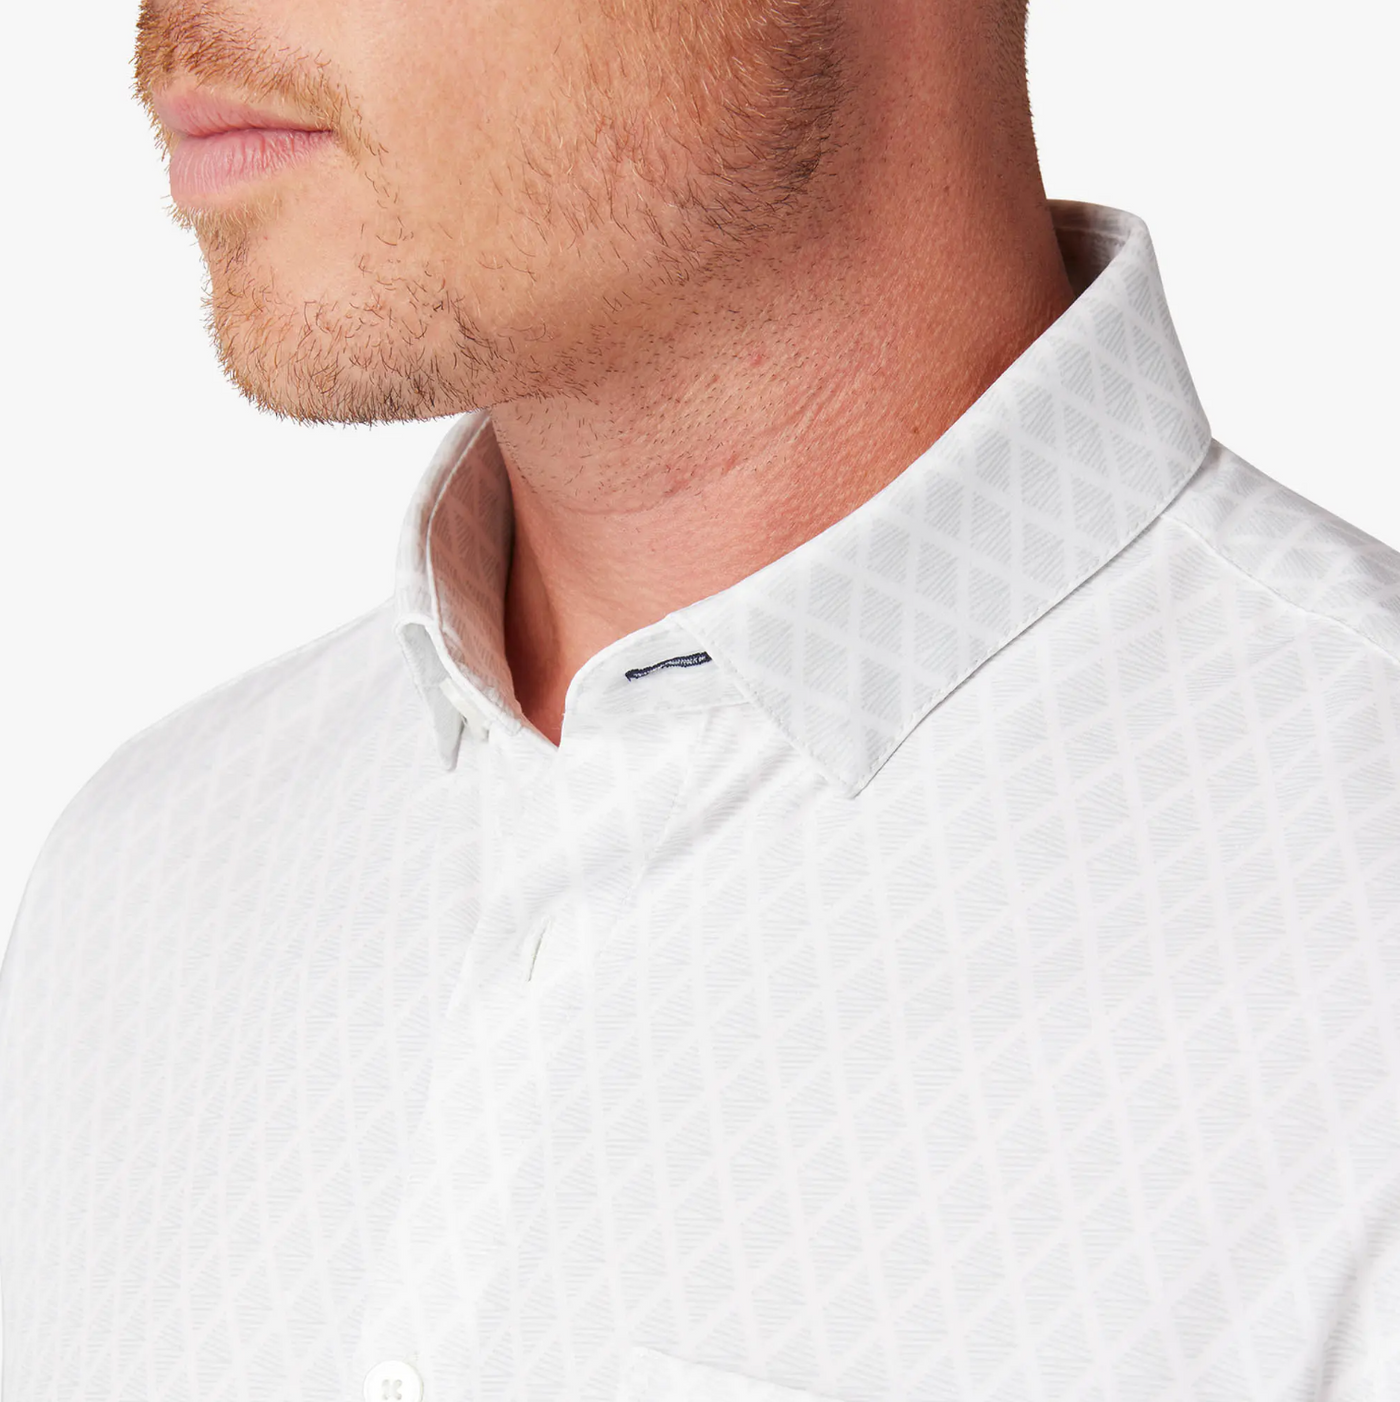 Mizzen + Main - Leeward Short Sleeve Dress Shirt - Aluminum Argyle Stripe